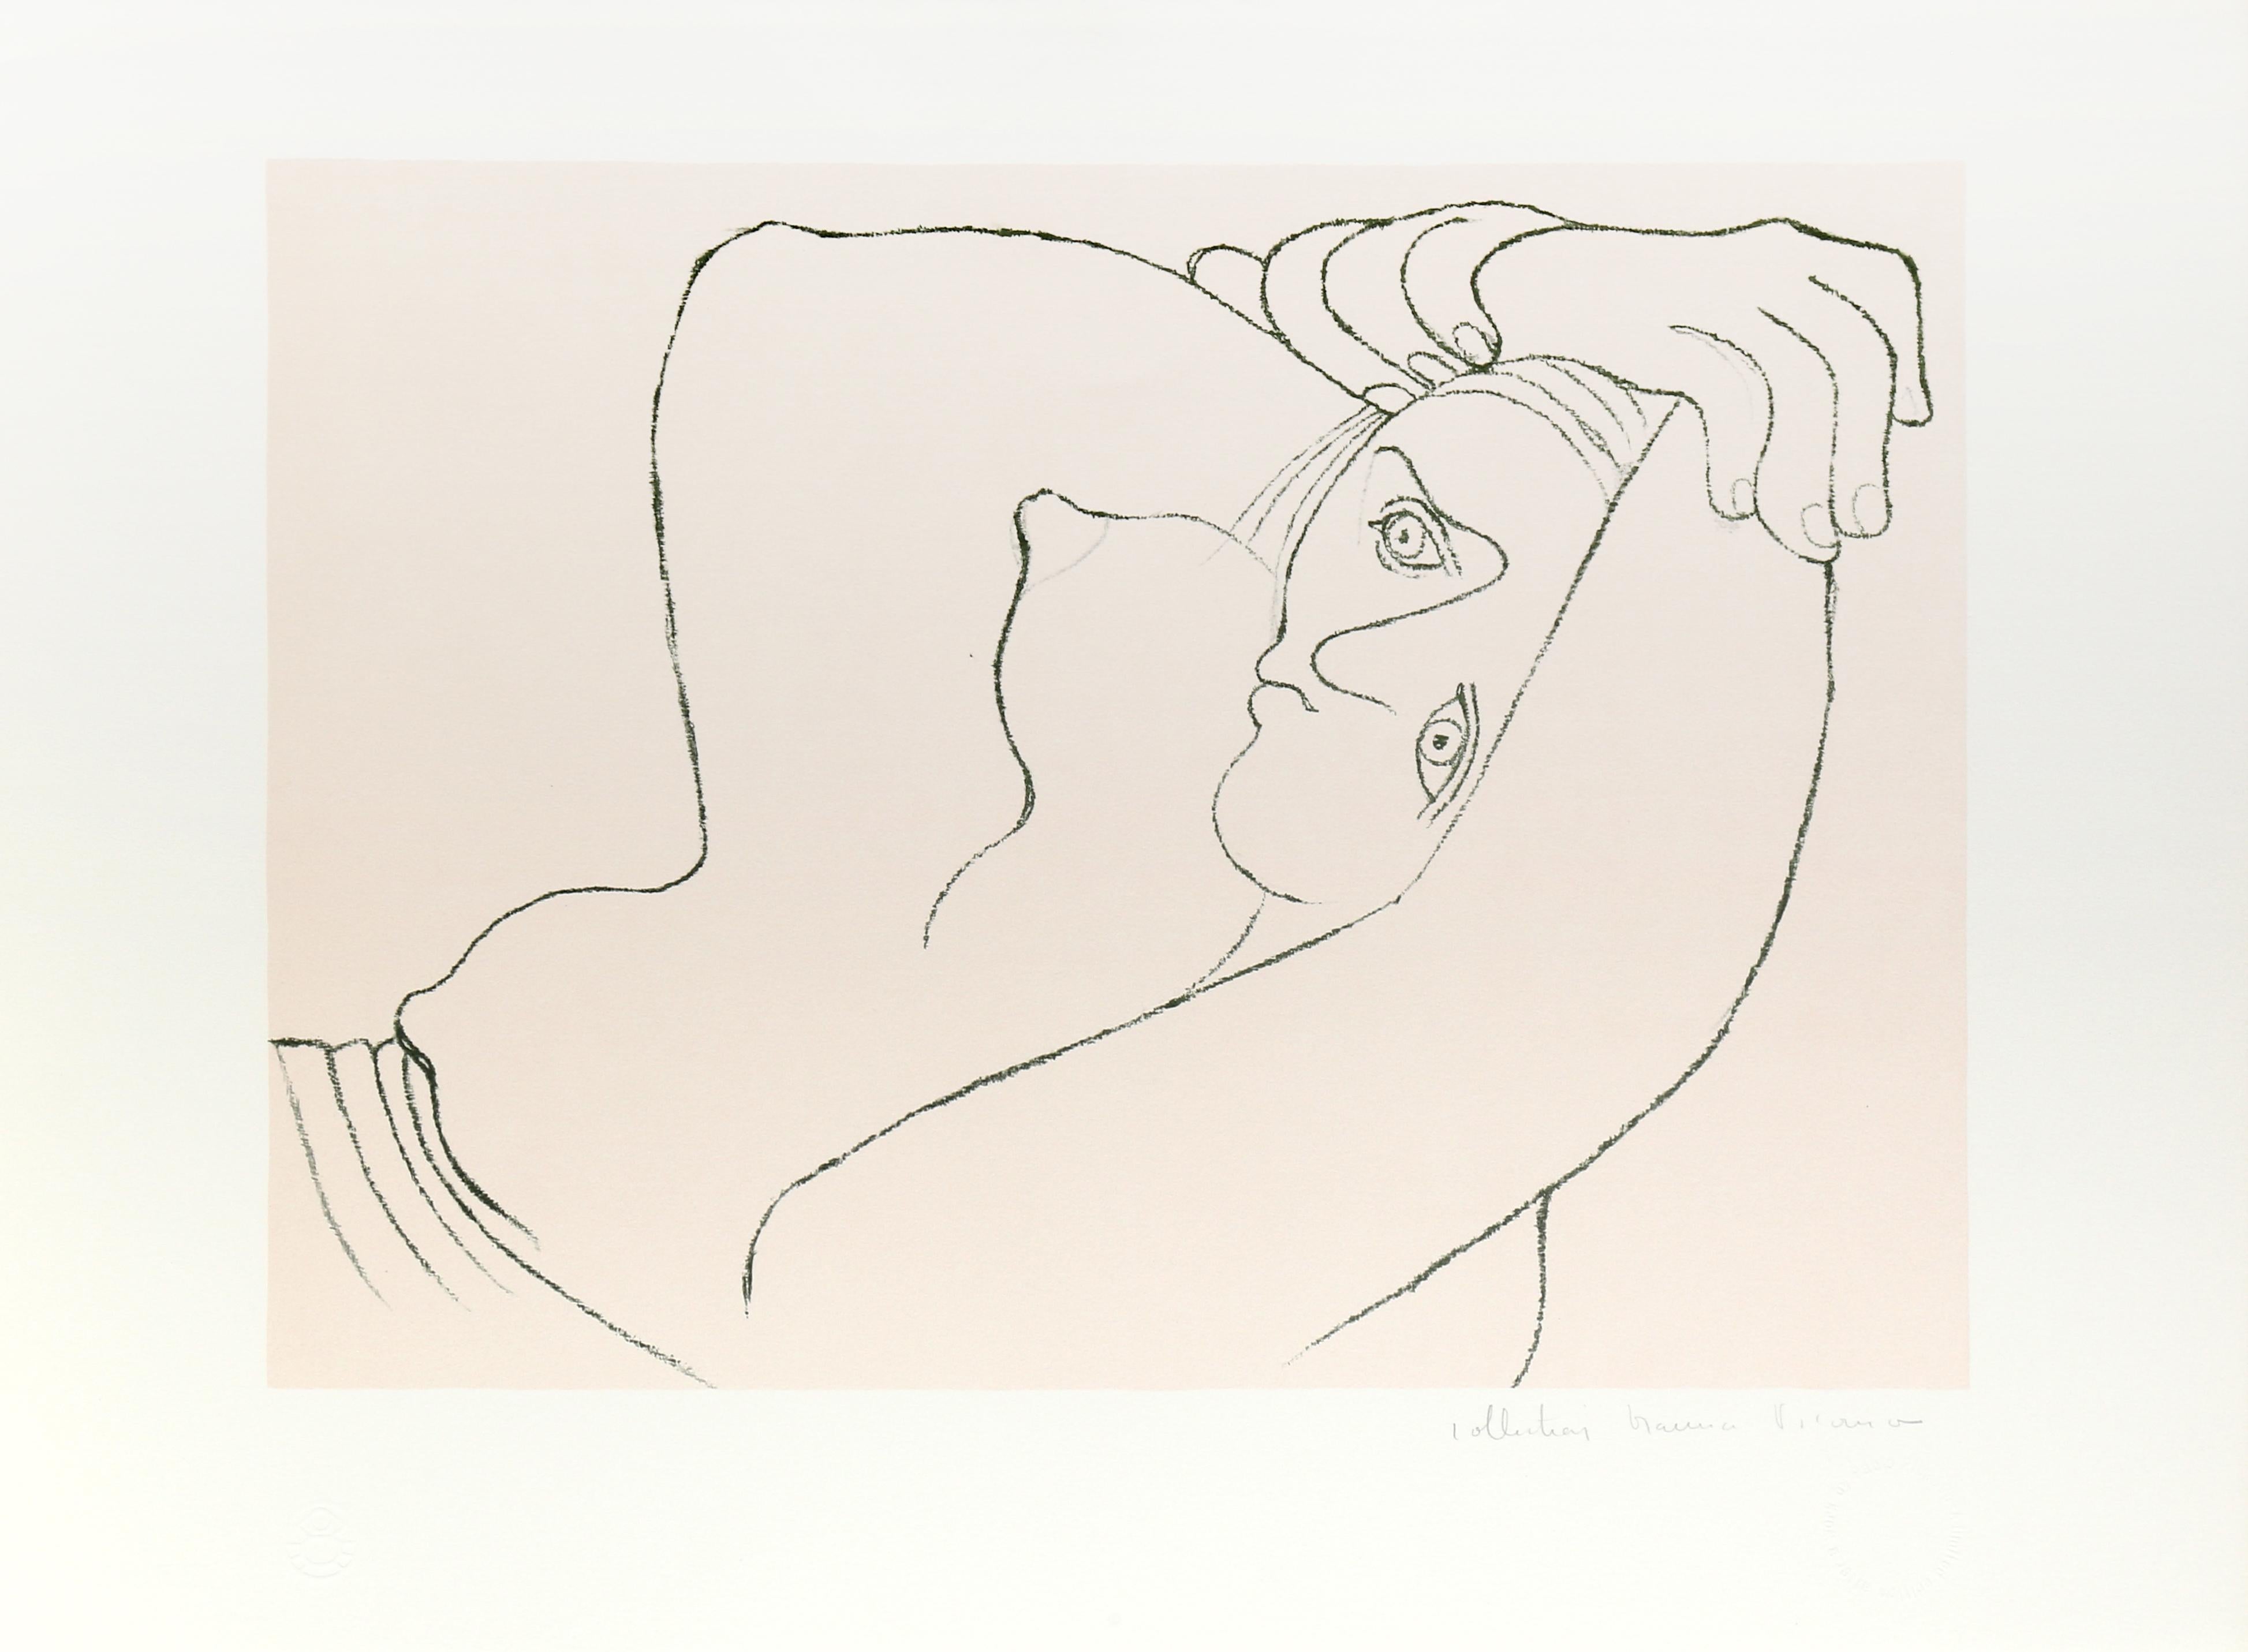 Dans des tons doux de gris et de jaune, la femme représentée dans l'estampe de Pablo Picasso est rendue dans un style cubiste avec des lignes et des formes fluides. Les bras tendus au-dessus de la tête pendant qu'elle se repose, le haut de la femme